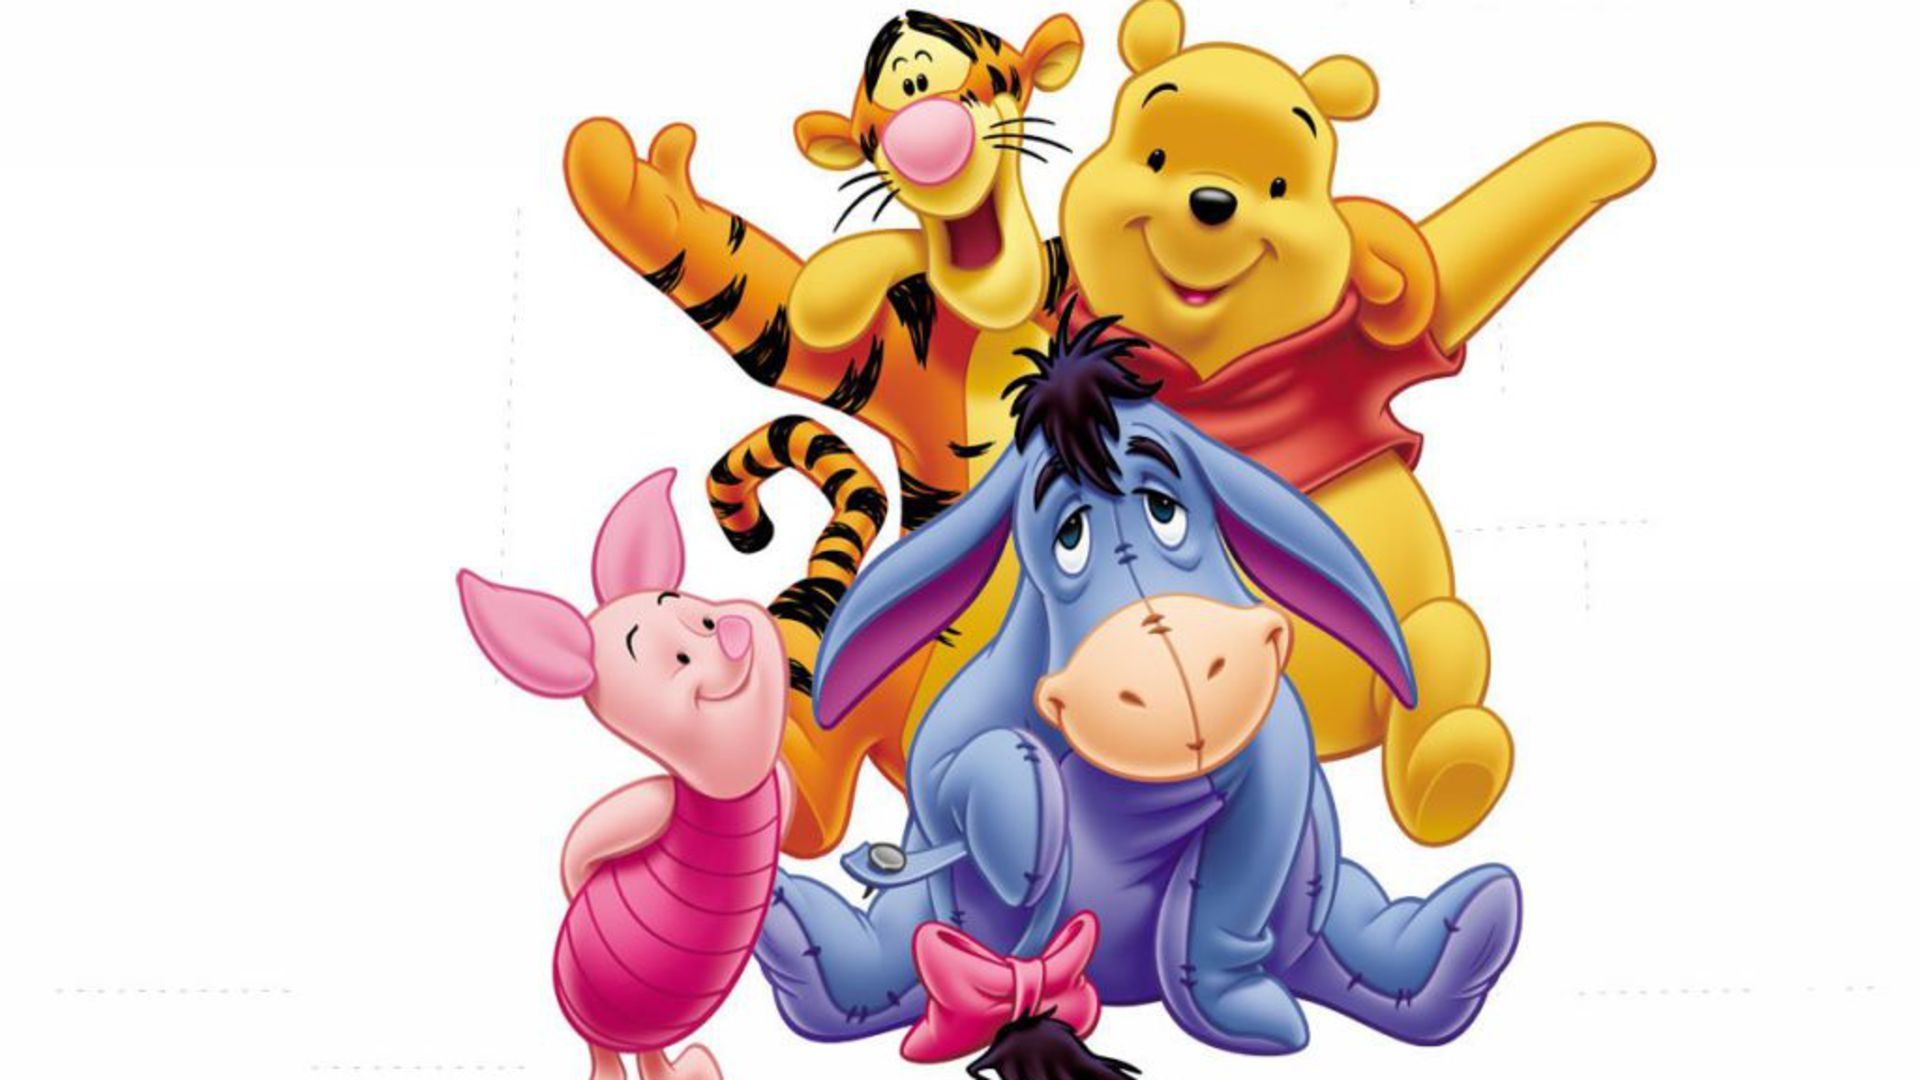 HD wallpaper, The, Wallpaper, Winnie, Free, Pooh